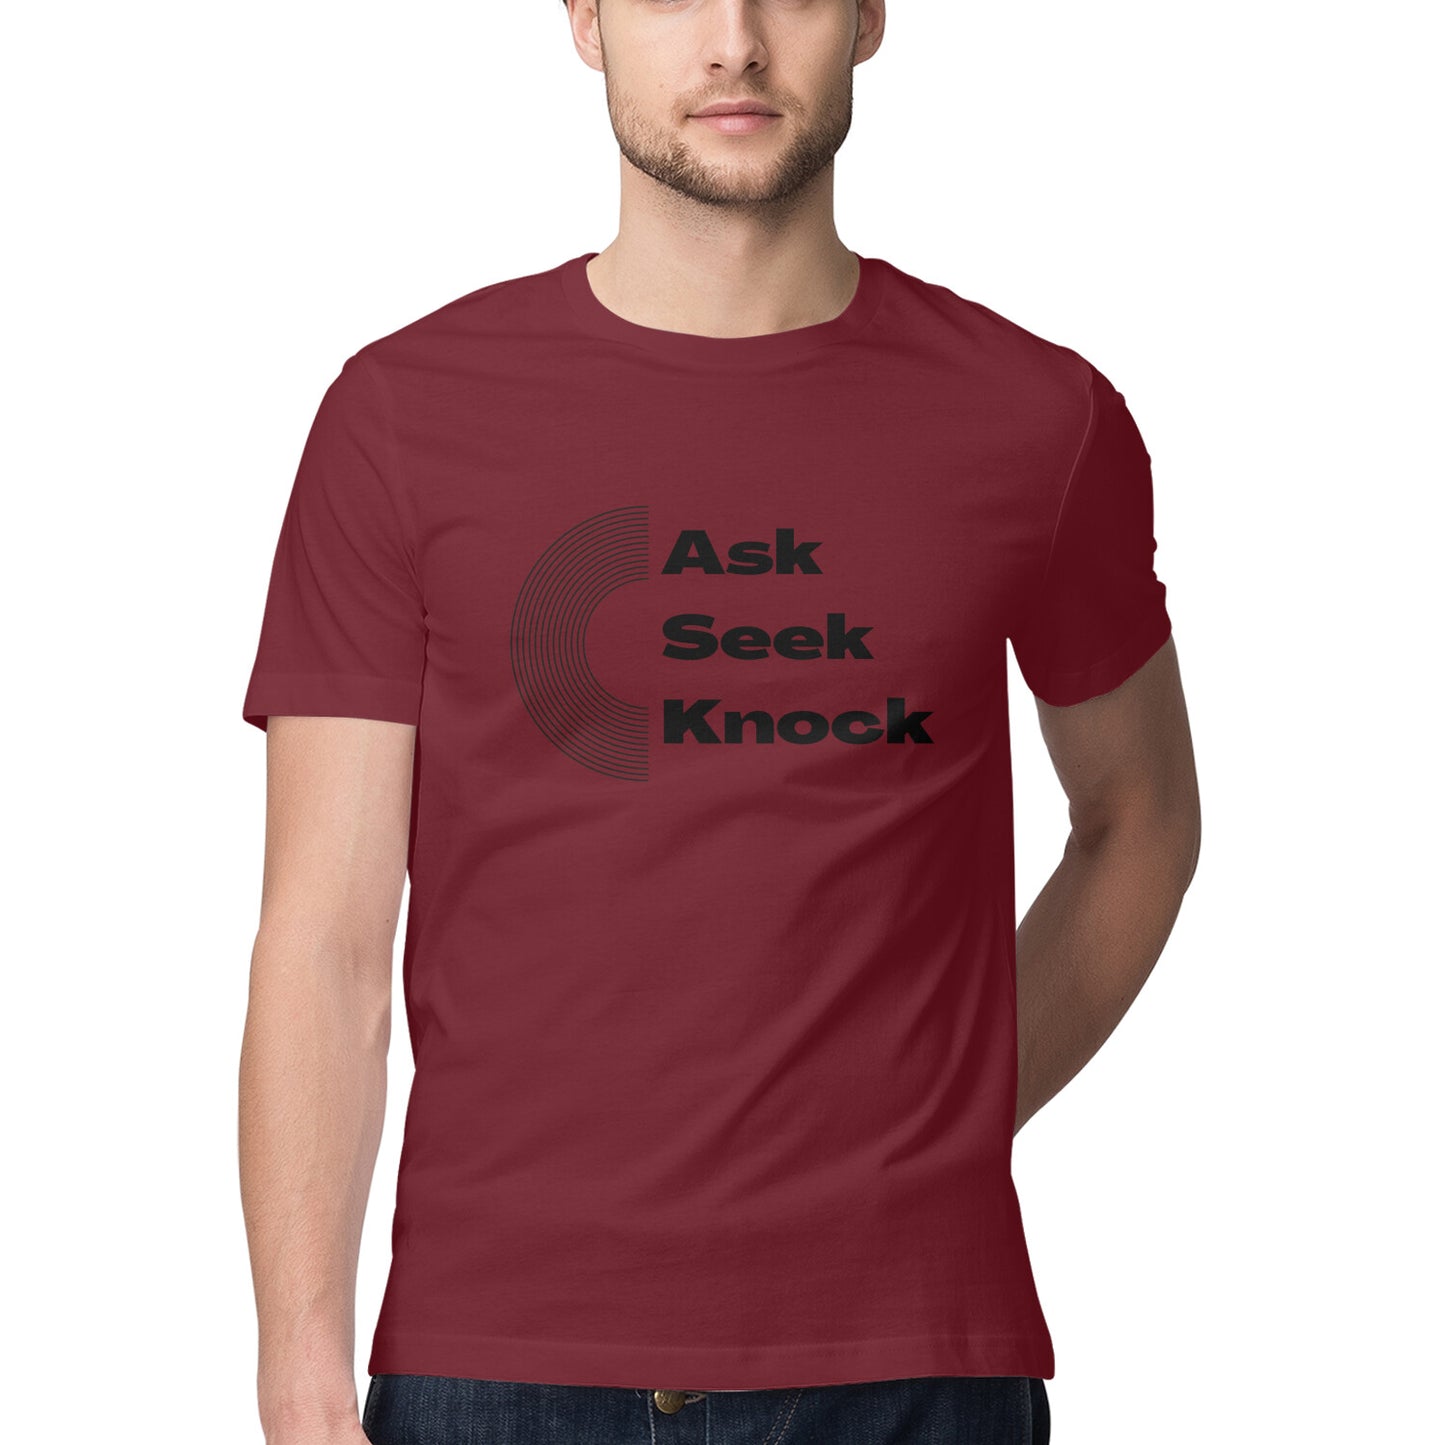 Ask, Seek, Knock' Men's tee